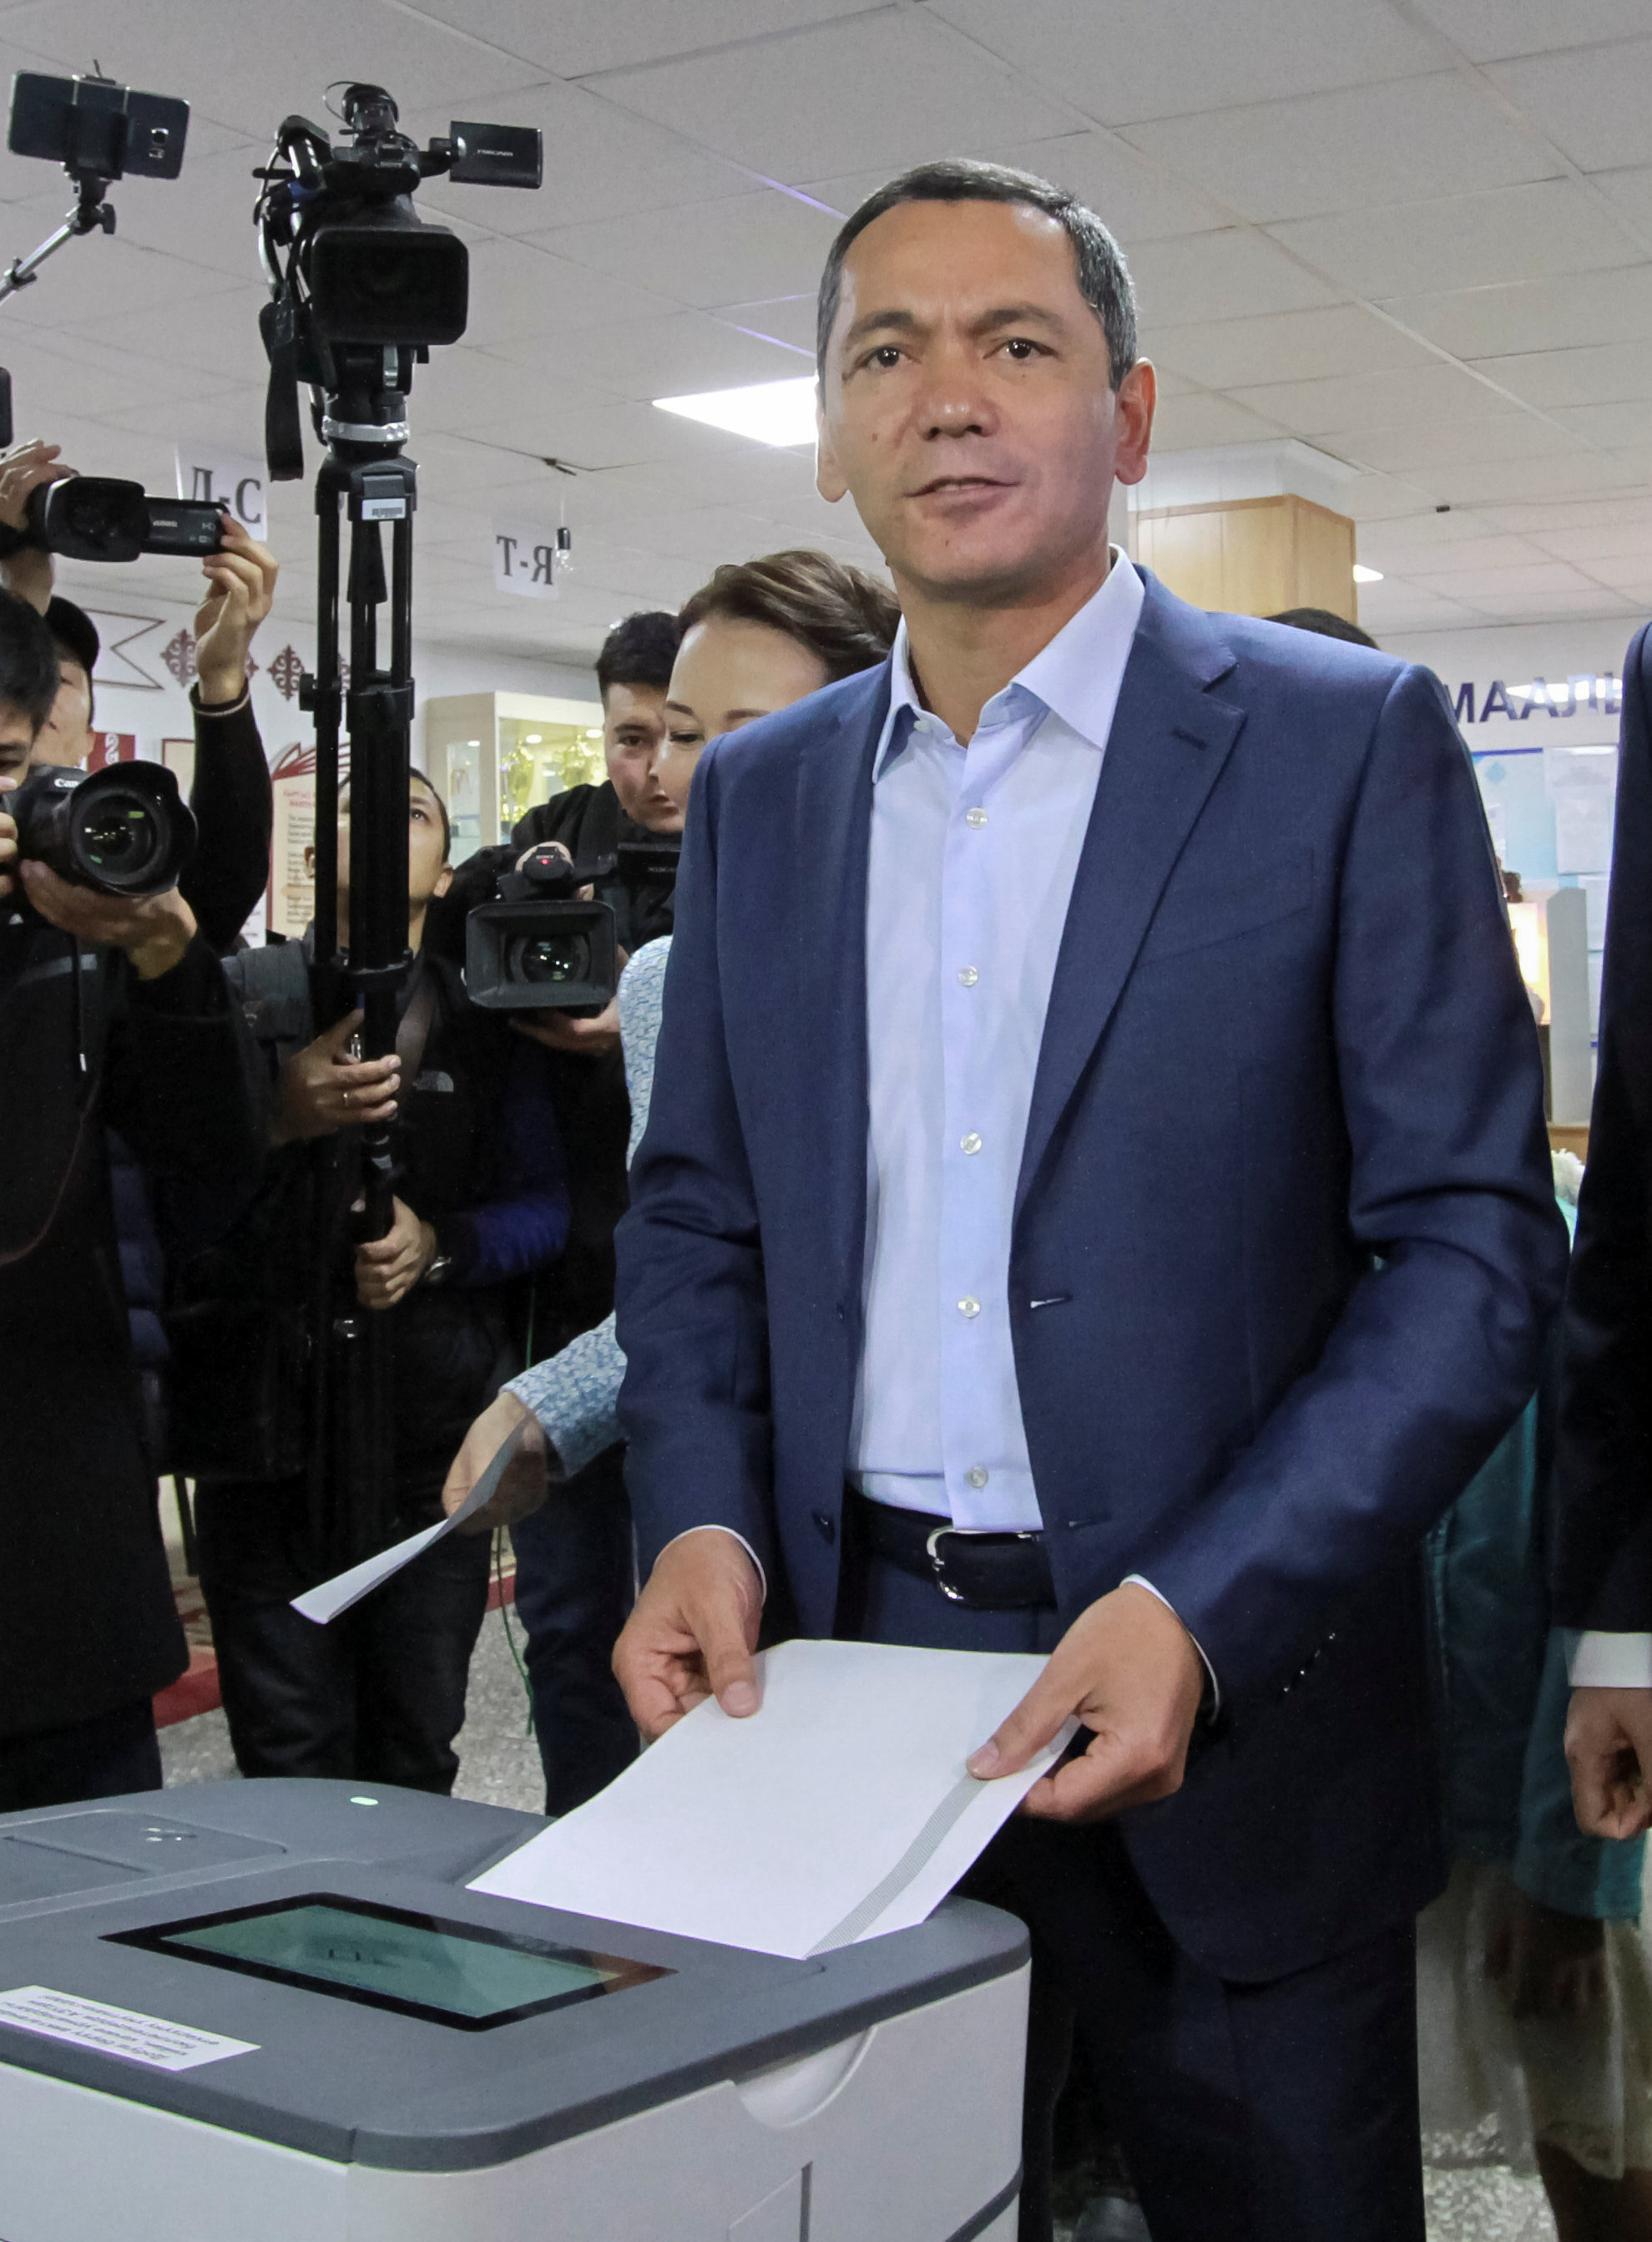 المرشح الرئاسى اموربيك بابانوف يدلى بصوته فى مركز اقتراع خلال الانتخابات الرئاسية فى بيشكيك